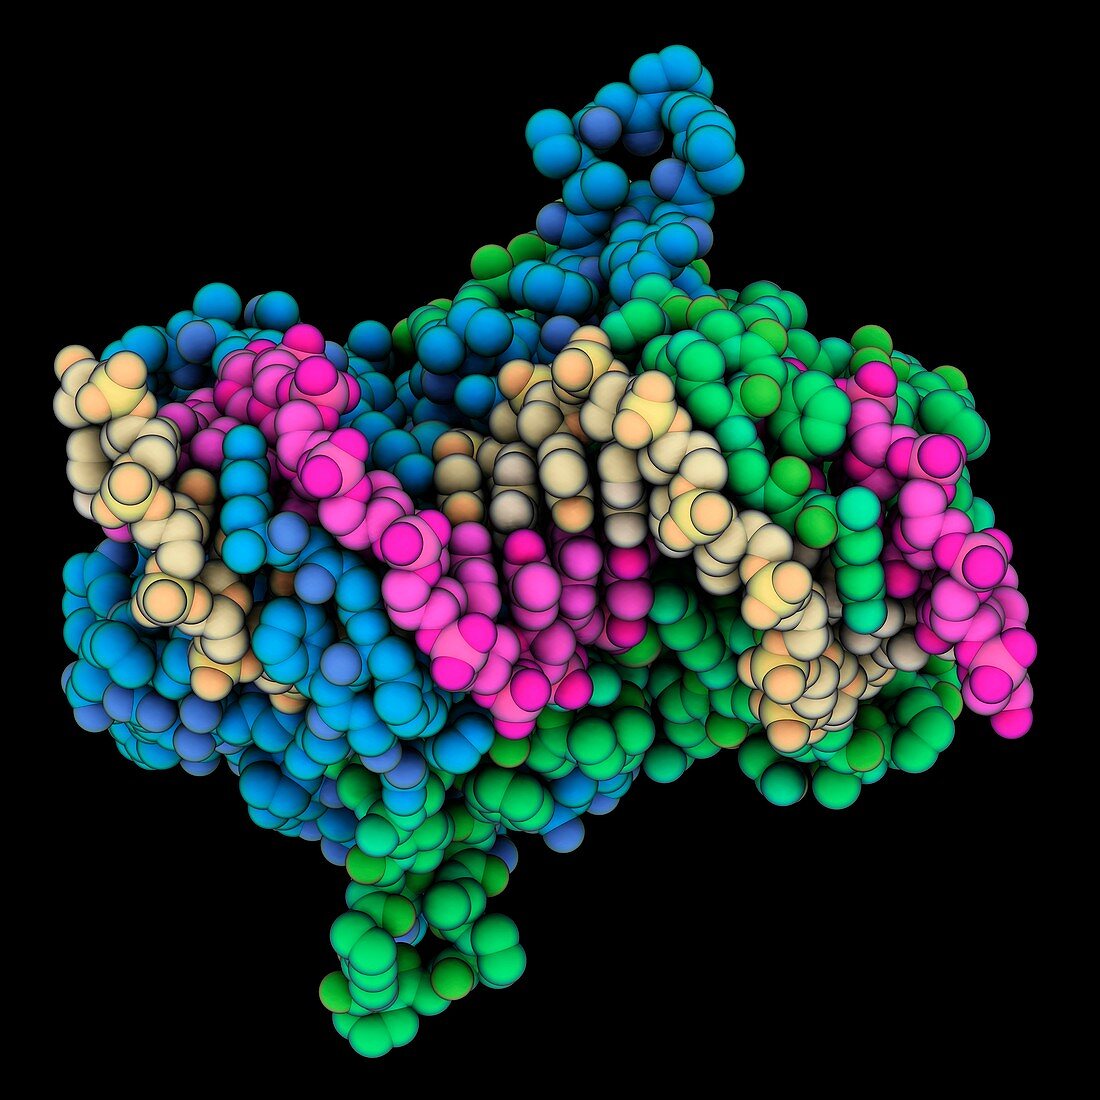 Epstein-Barr virus protein complex